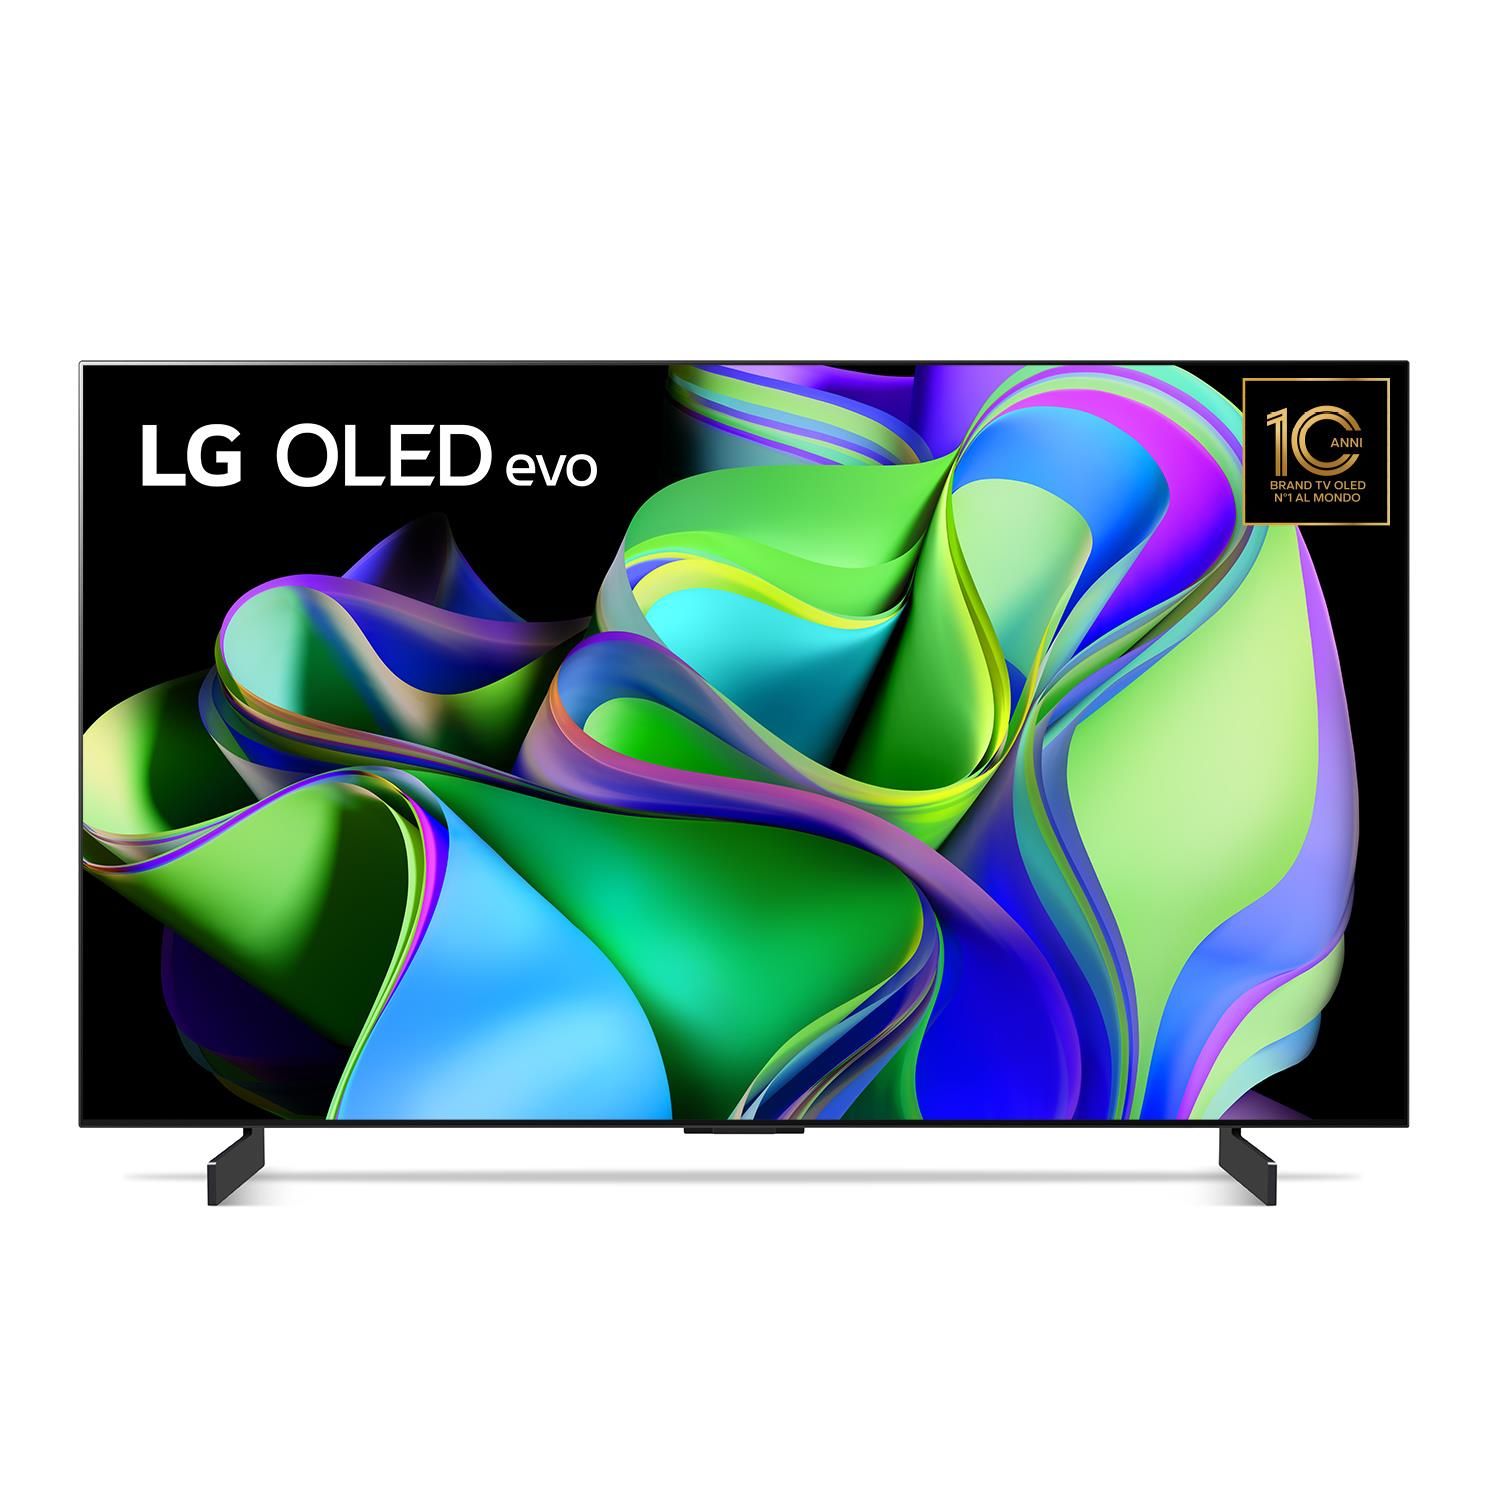 LG Tv OLED Evo